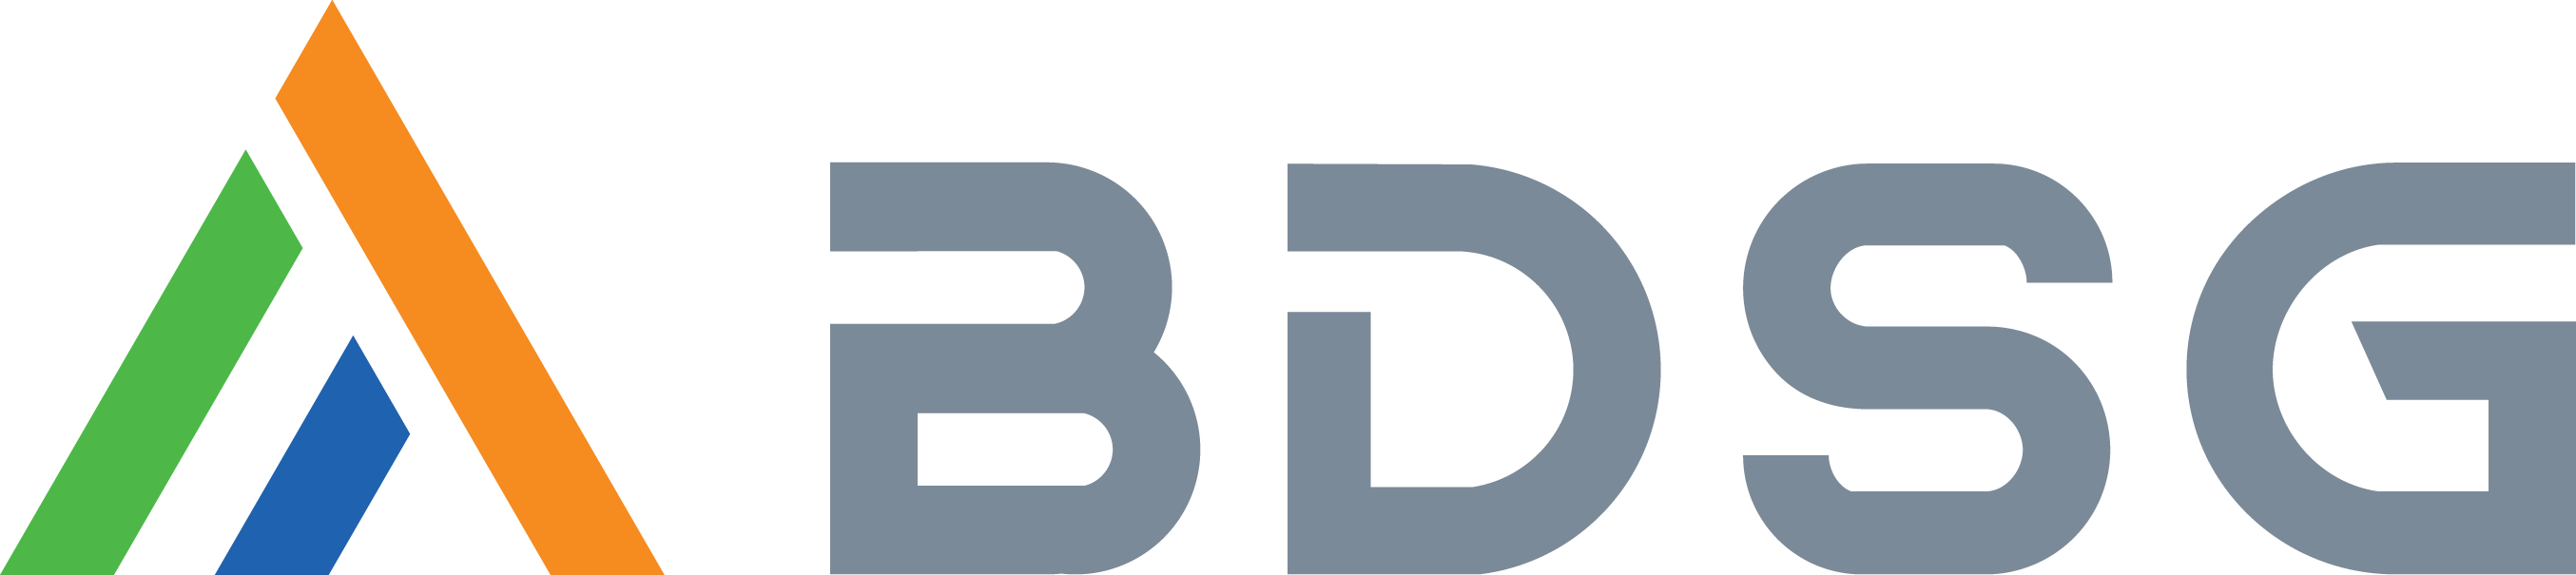 Công ty cổ phần tập đoàn BDSG